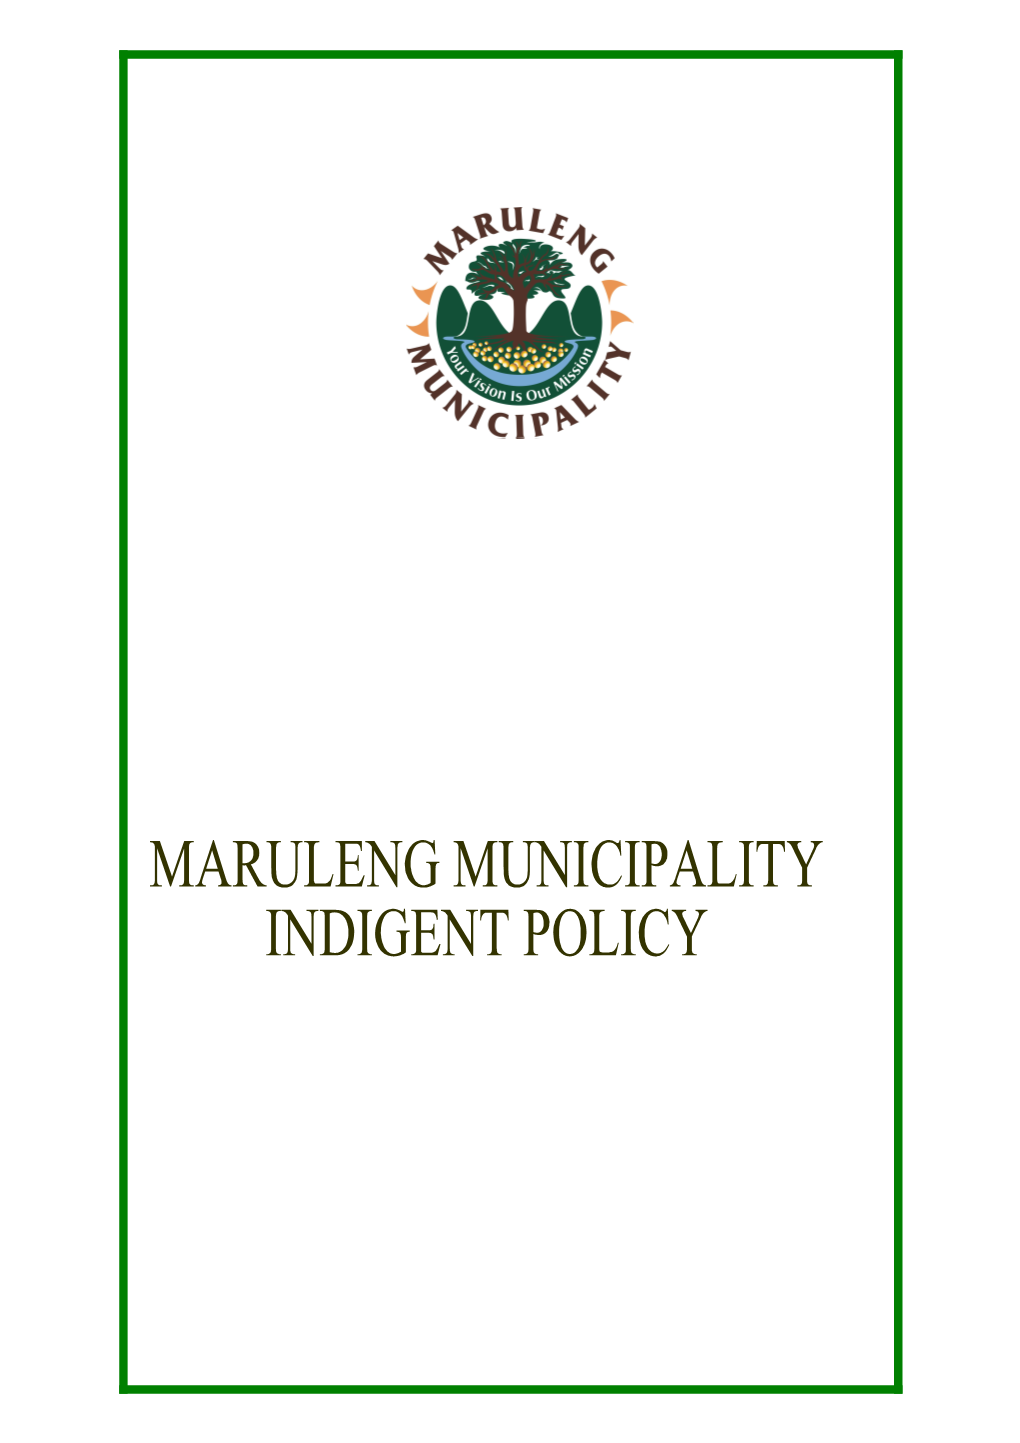 Mopani District Municipality (Mdm) Indigent